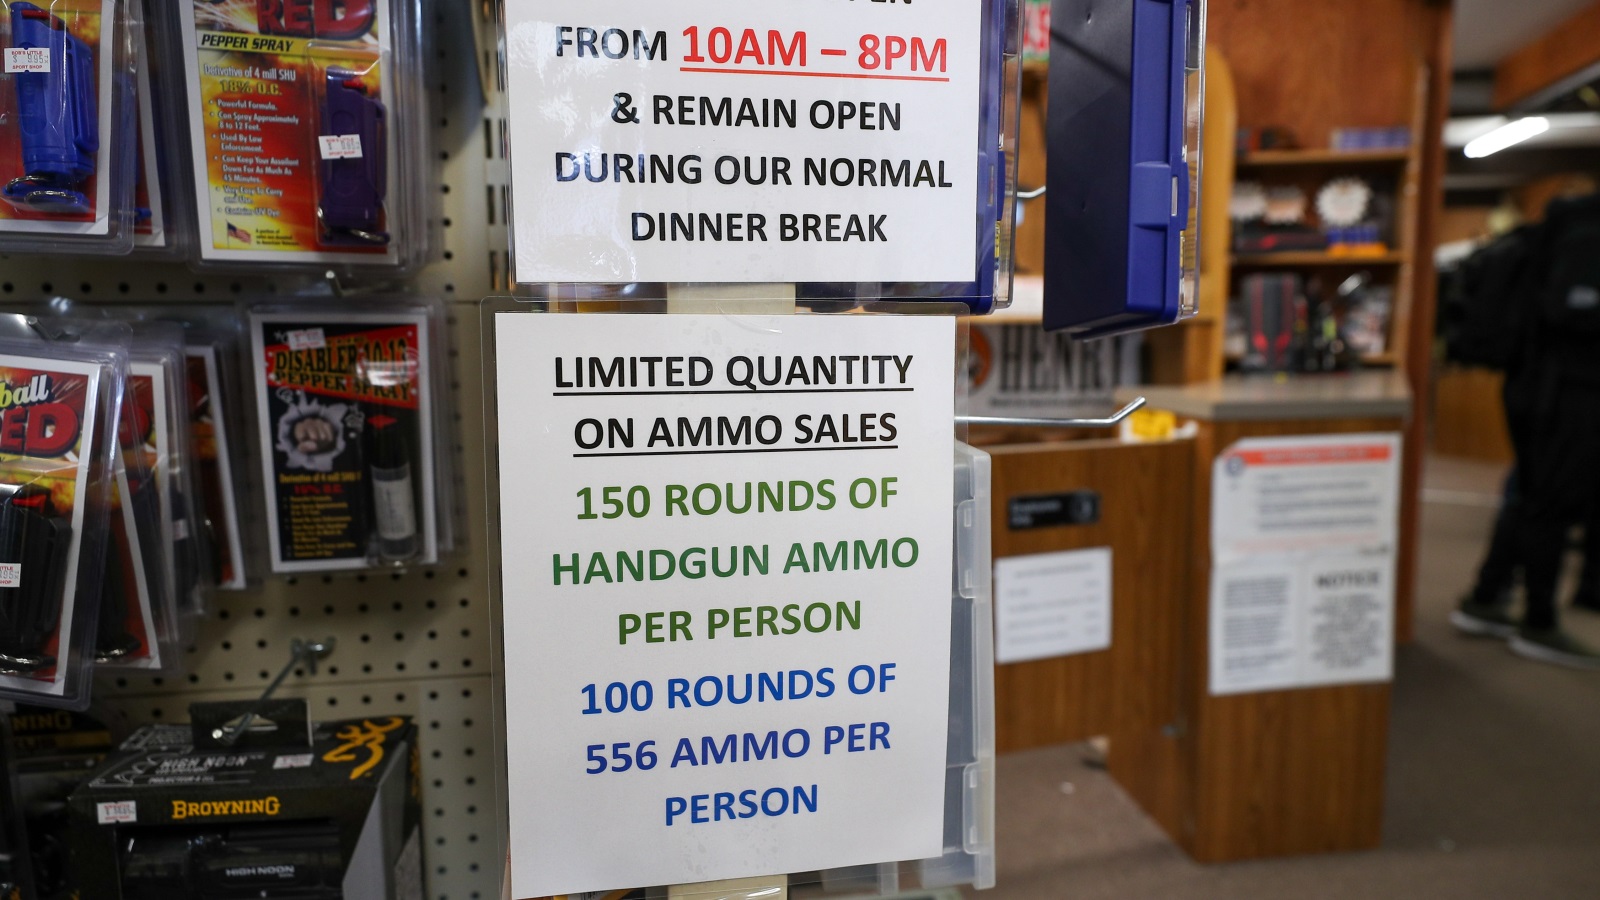 ‪محل لبيع الأسلحة يشير إلى  أن لديه كميات محدودة منها‬ محل لبيع الأسلحة يشير إلى  أن لديه كميات محدودة منها (الأناضول)